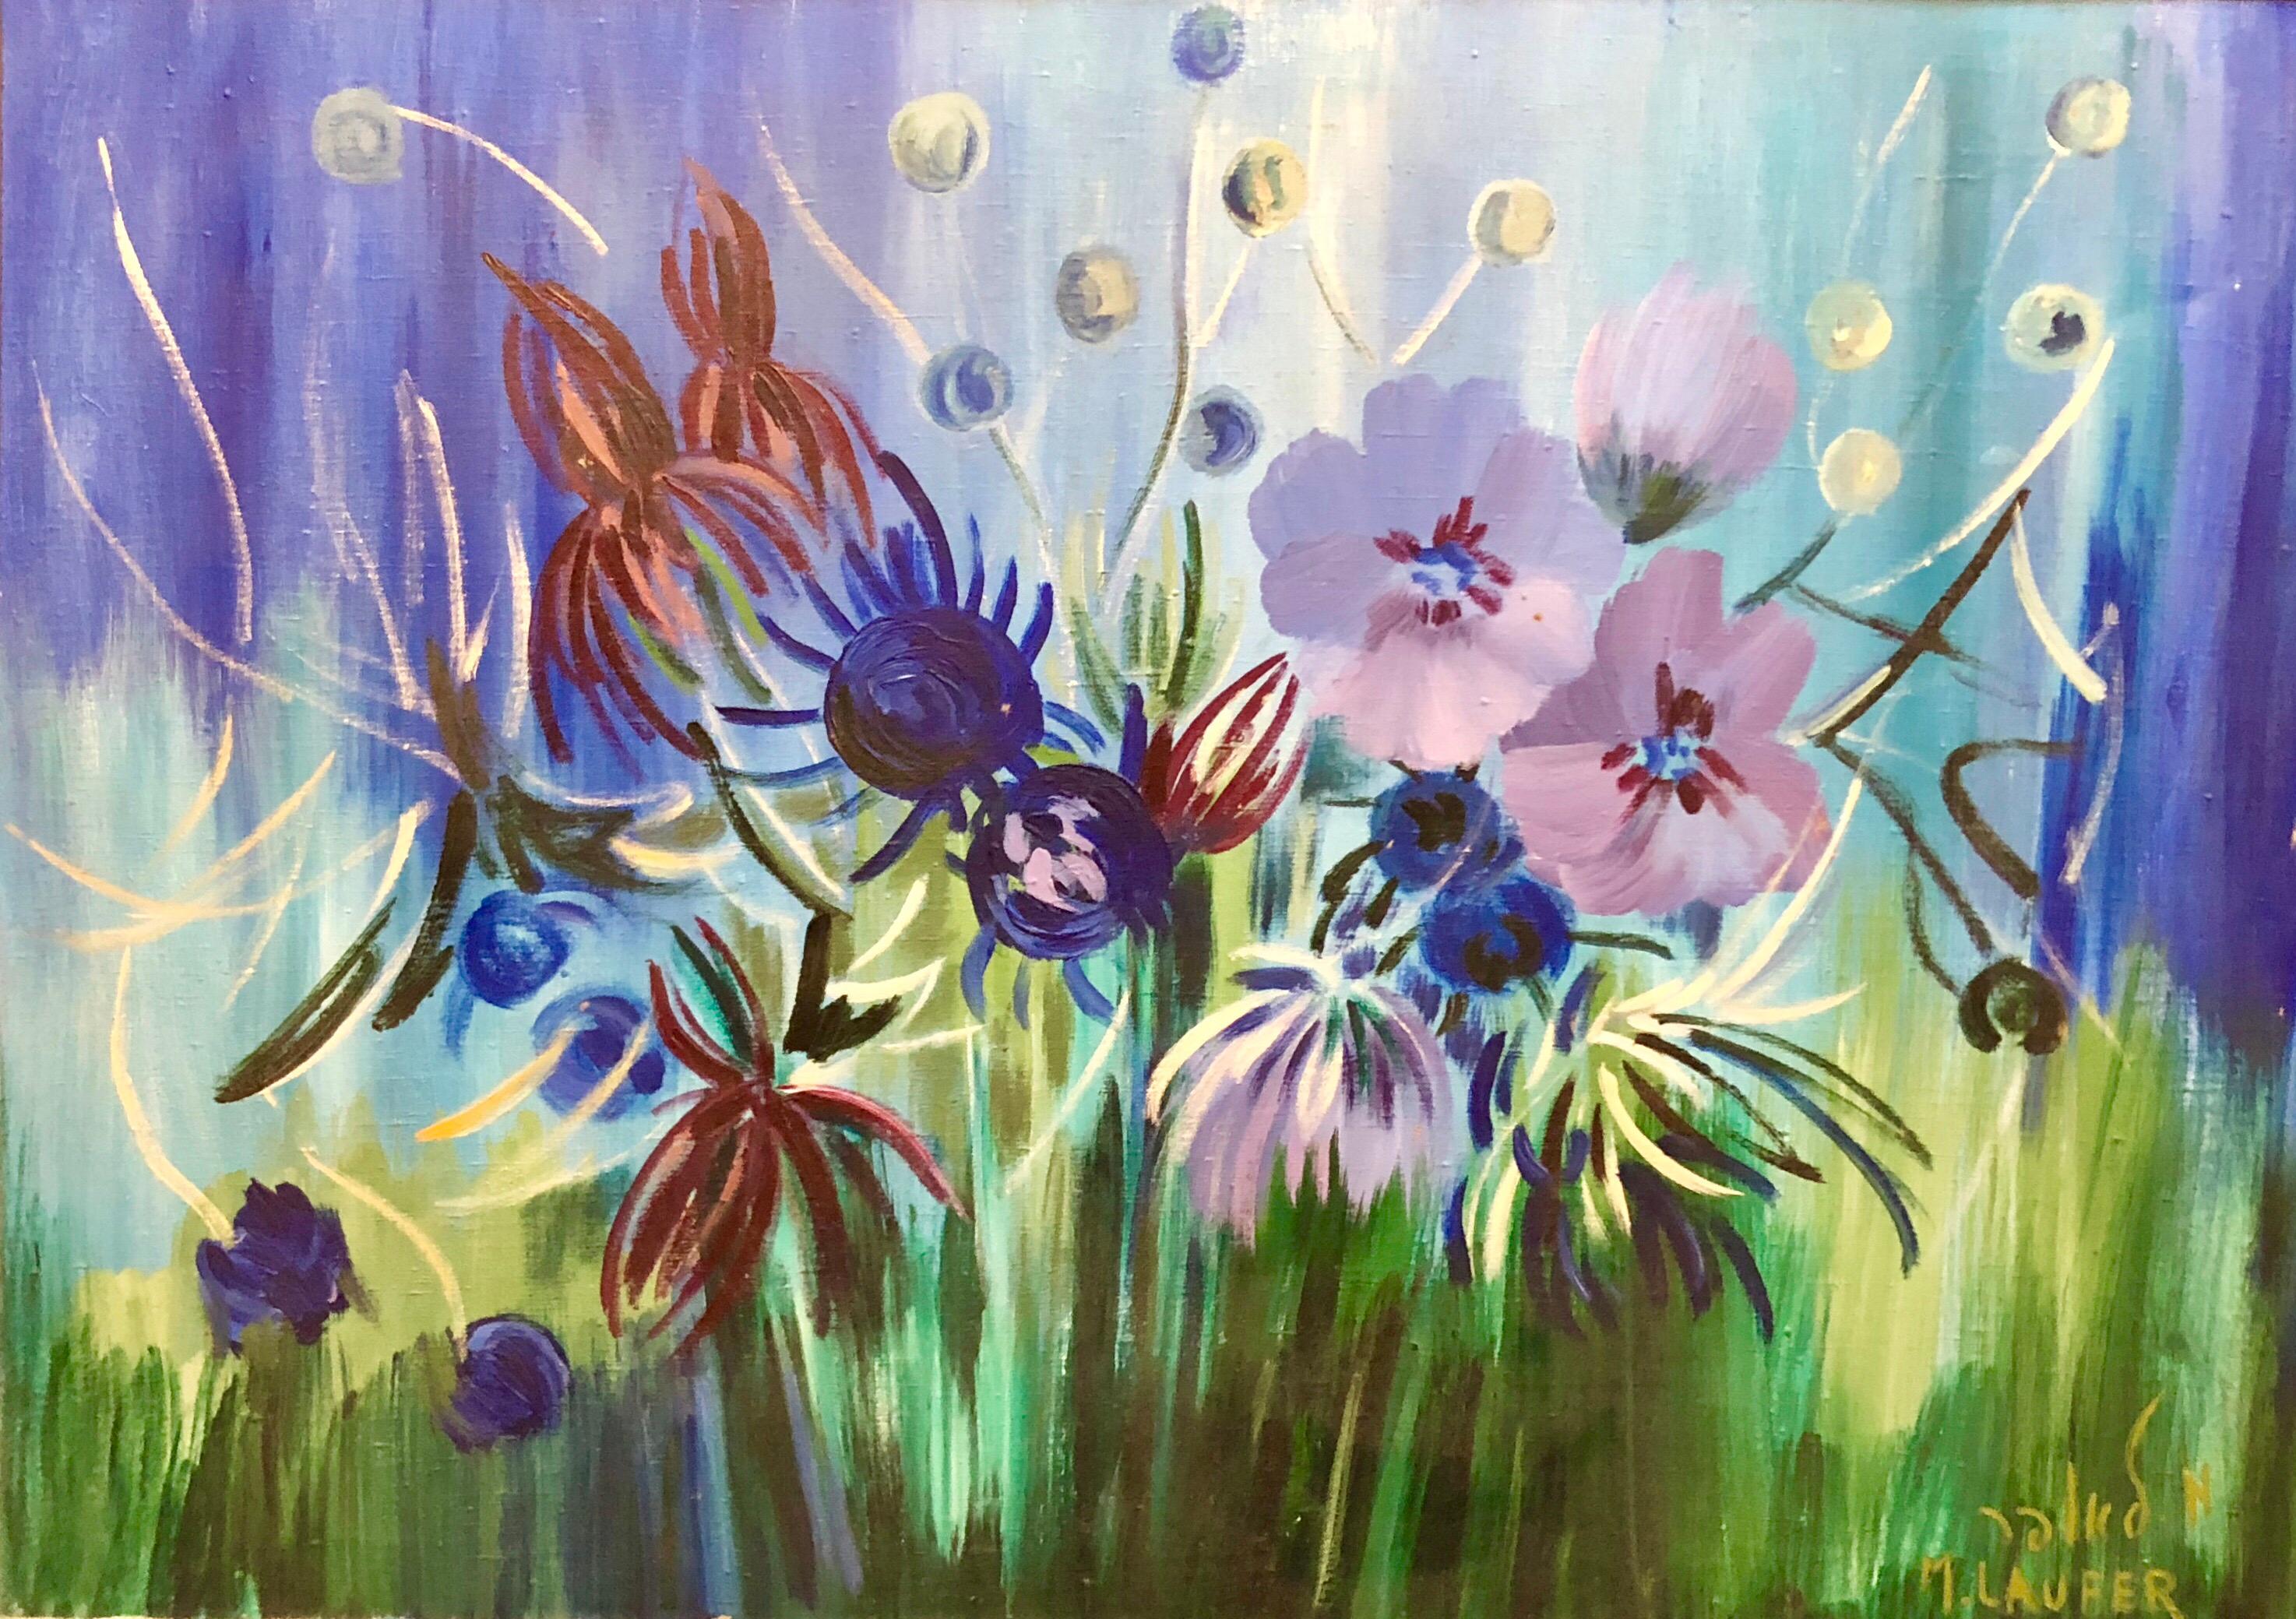 Still-Life Painting Milia Laufer - Grande peinture à l'huile israélienne de fleurs surréalistes vibrantes